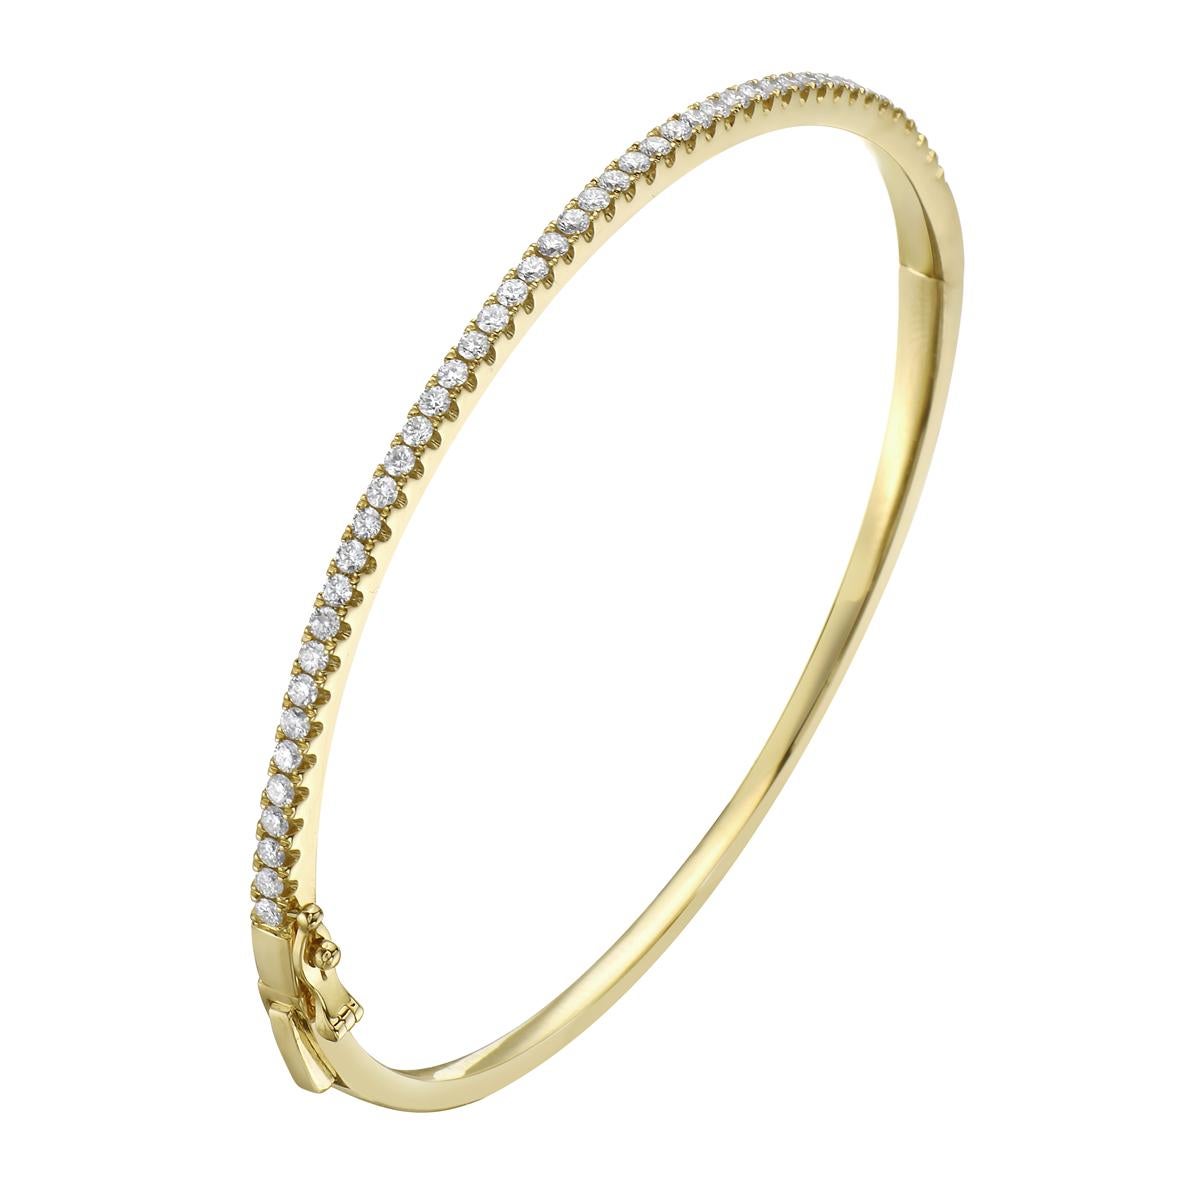 La mode et le glamour sont à l'honneur avec cet exquis bracelet en diamants. Ce bracelet en or jaune 14 carats est fabriqué à partir de 10,3 grammes d'or. Le sommet est orné d'une rangée de diamants de couleur GH, SI1-0SI2, composée de 45 diamants